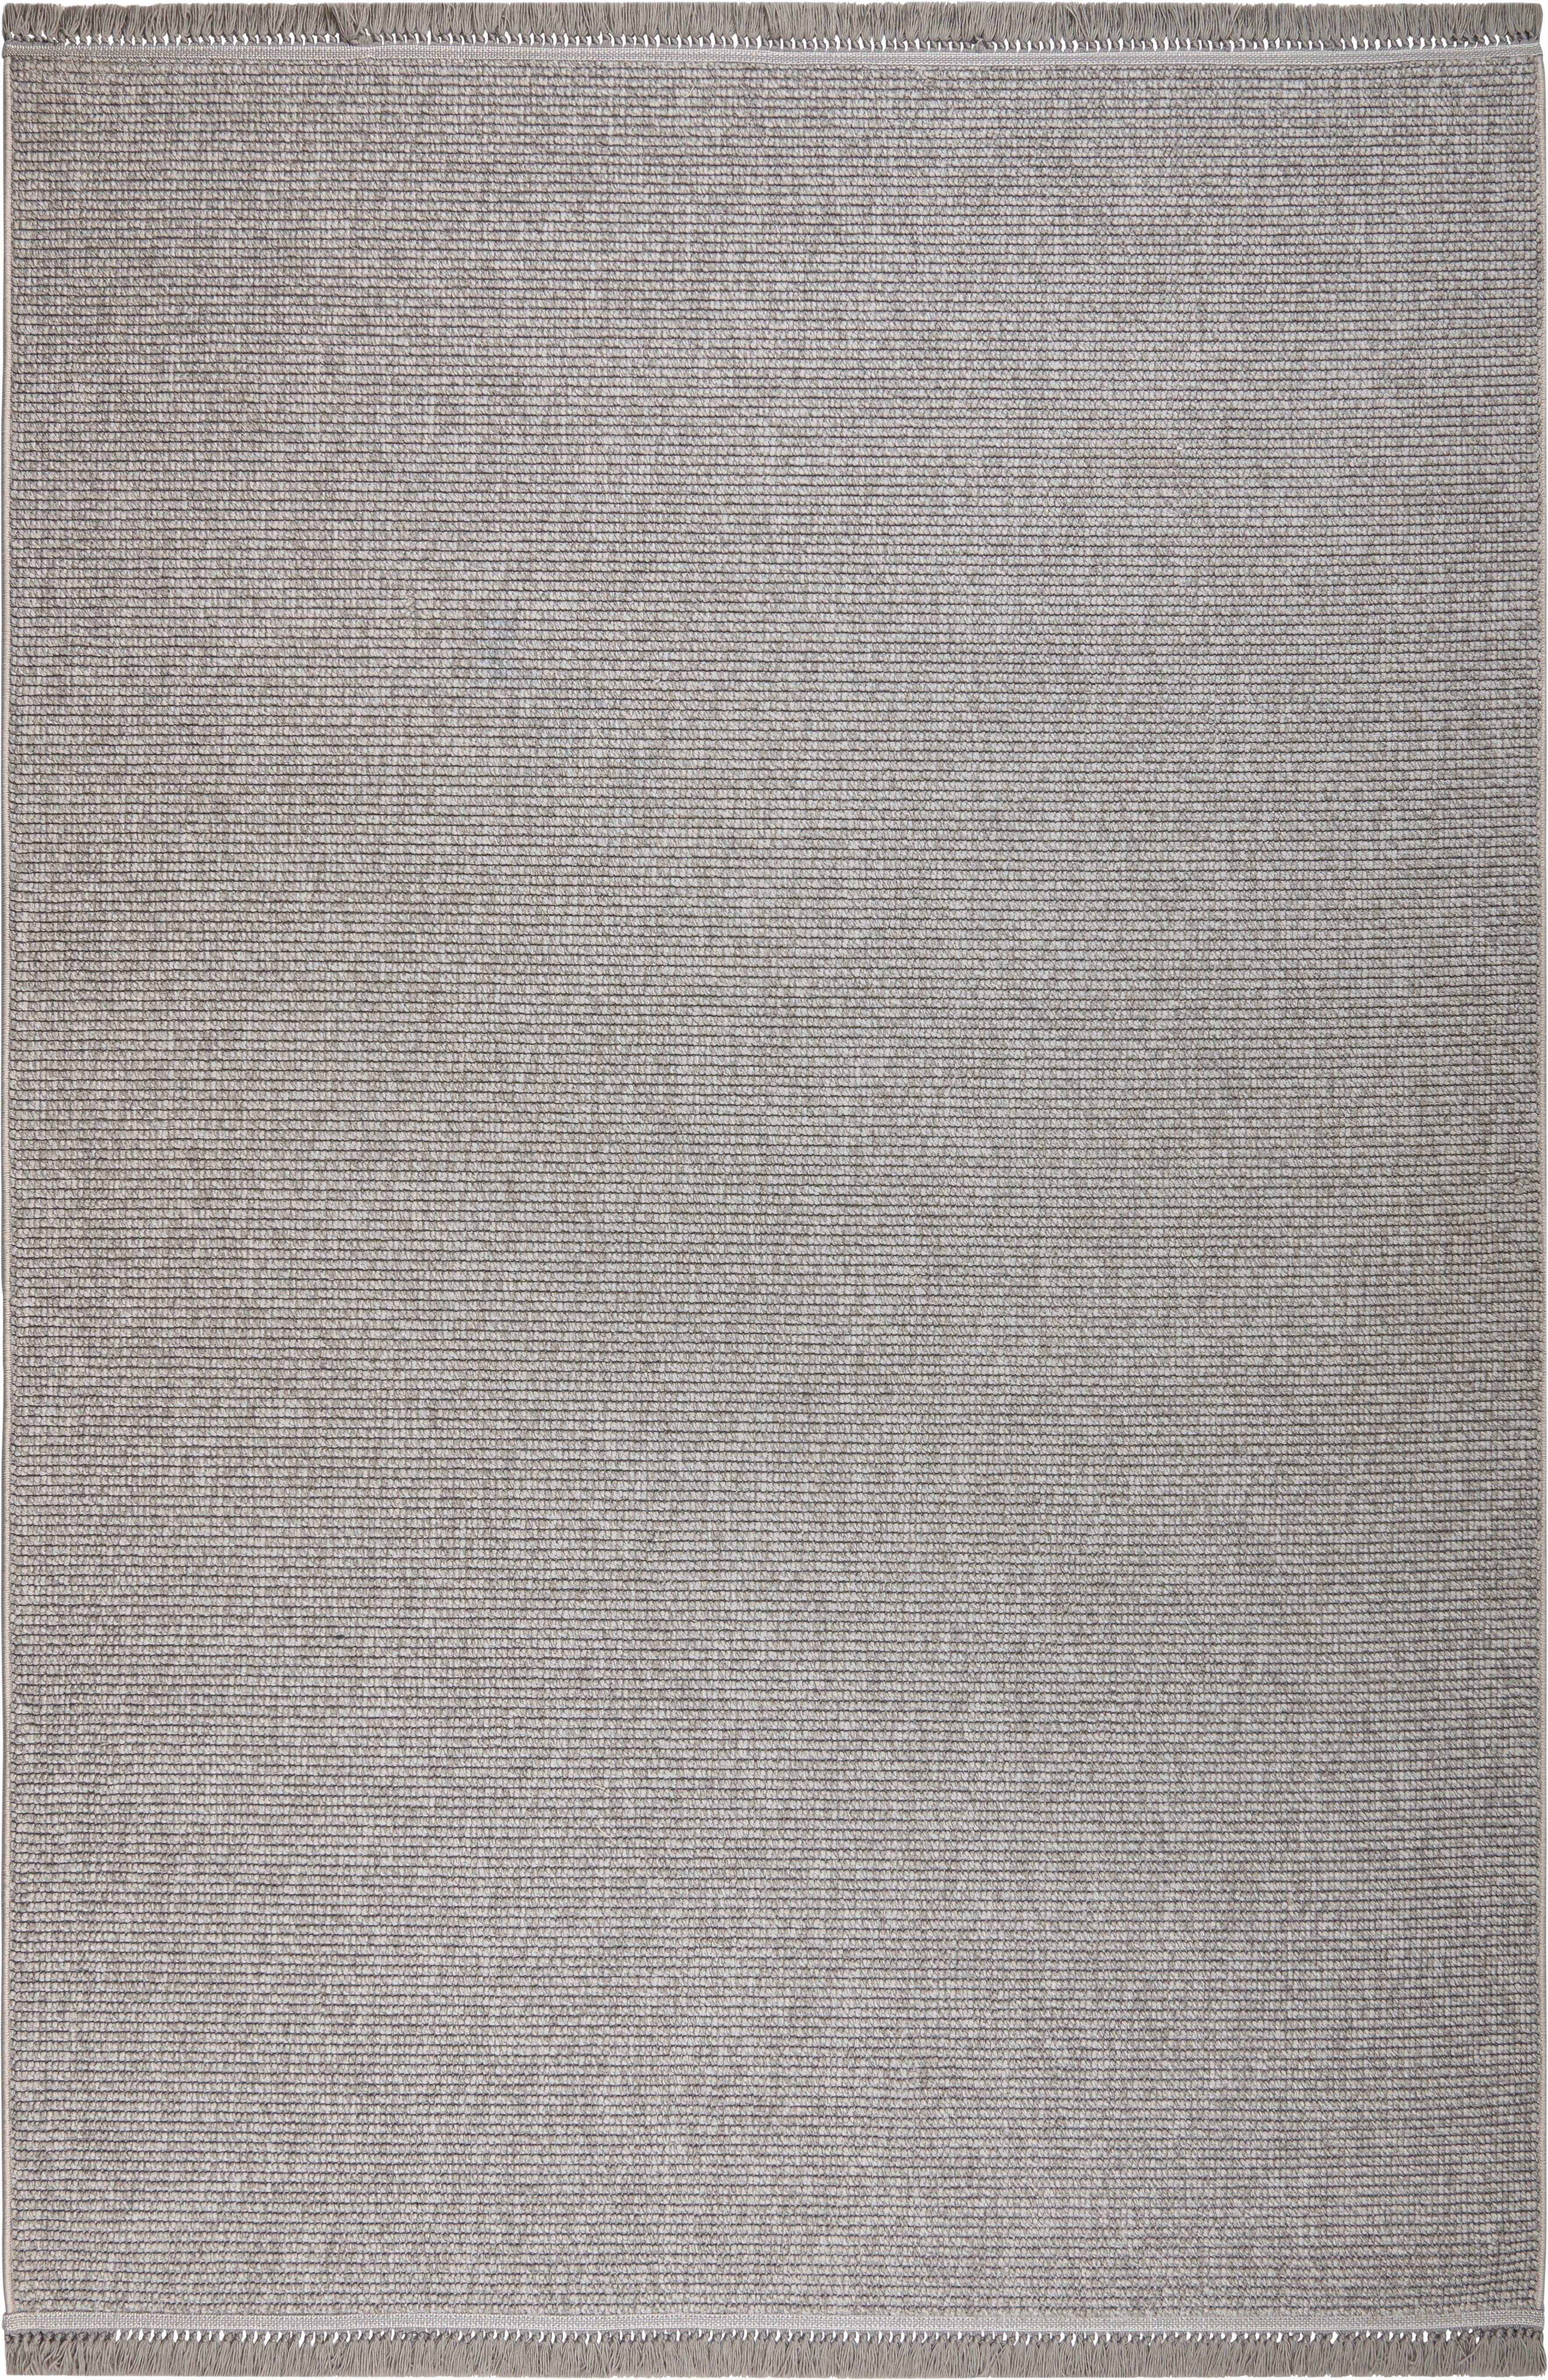 Webteppich Grau Ameli 160x230 cm - Grau, ROMANTIK / LANDHAUS, Textil (160/230cm) - James Wood